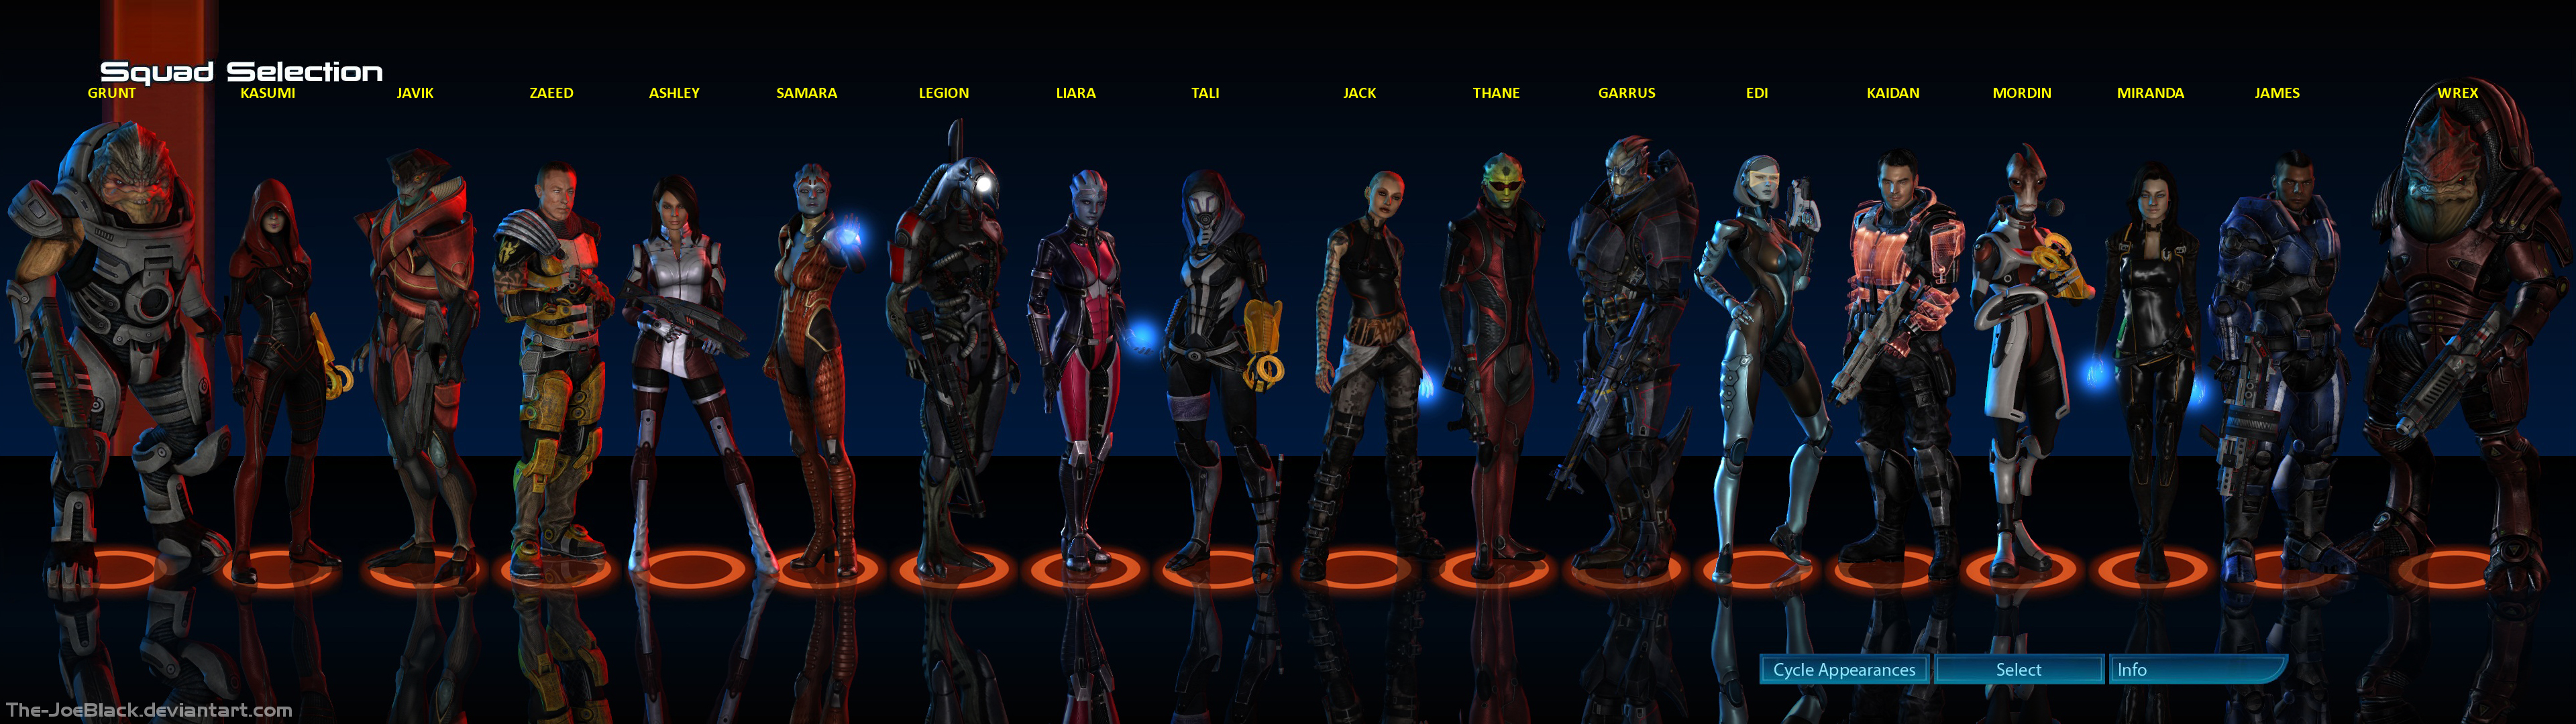 Mass Effect 3 HD wallpapers, Desktop wallpaper - most viewed